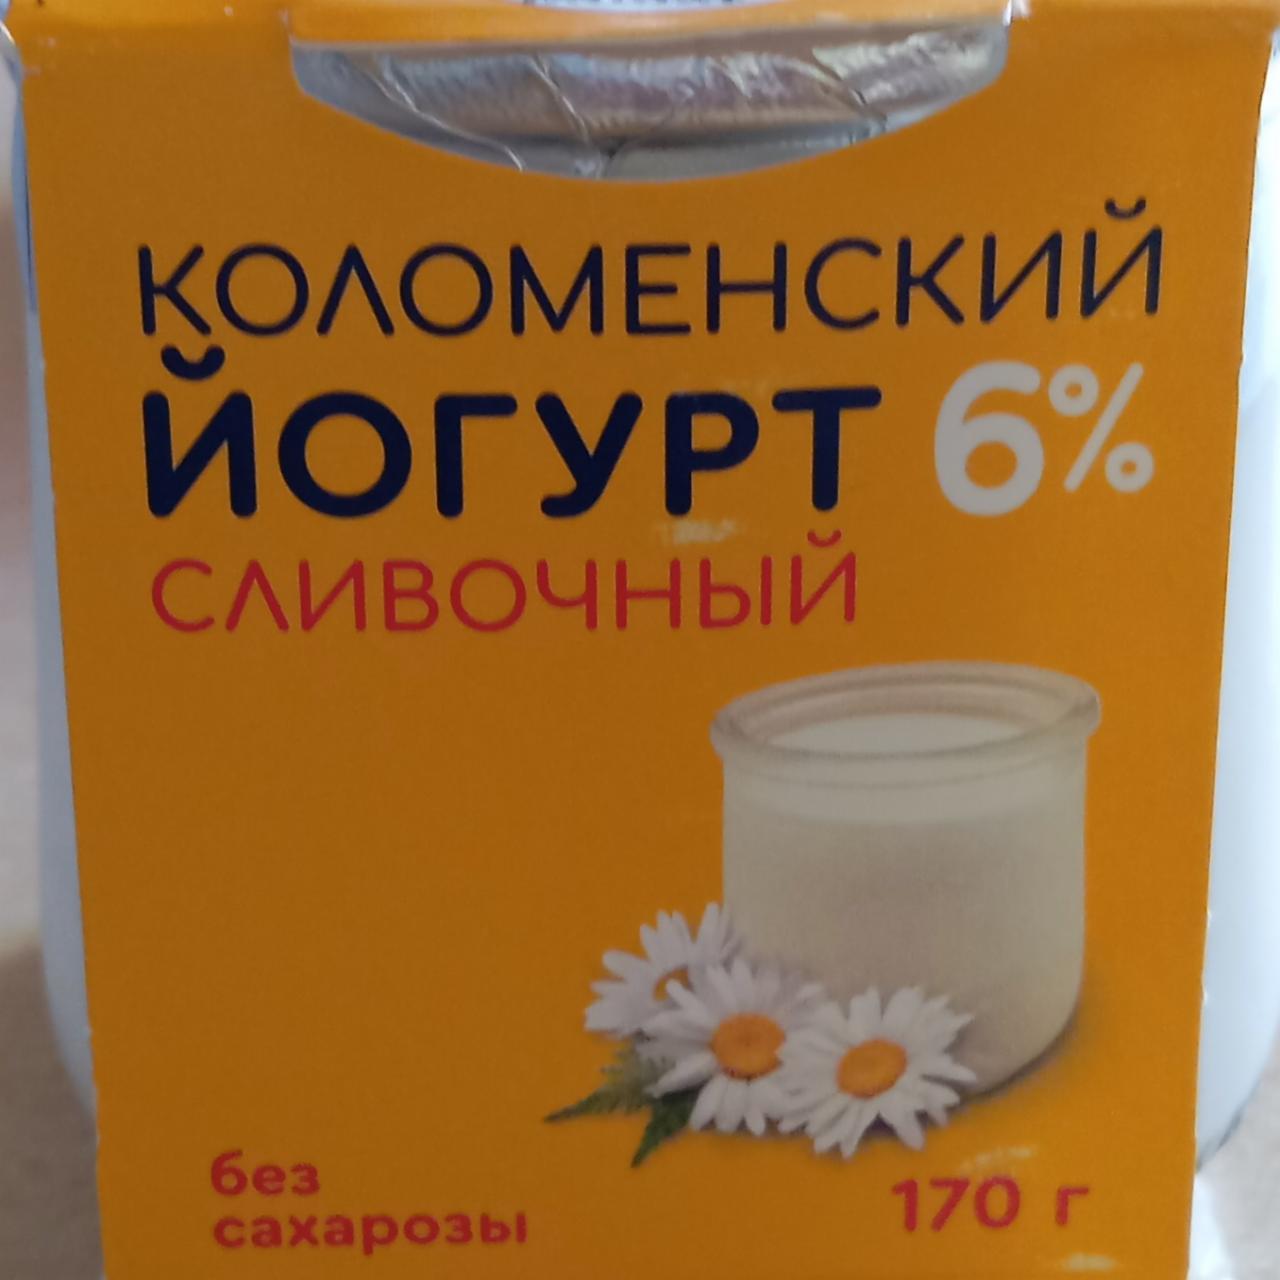 Фото - йогурт сливочный 6% Коломенский